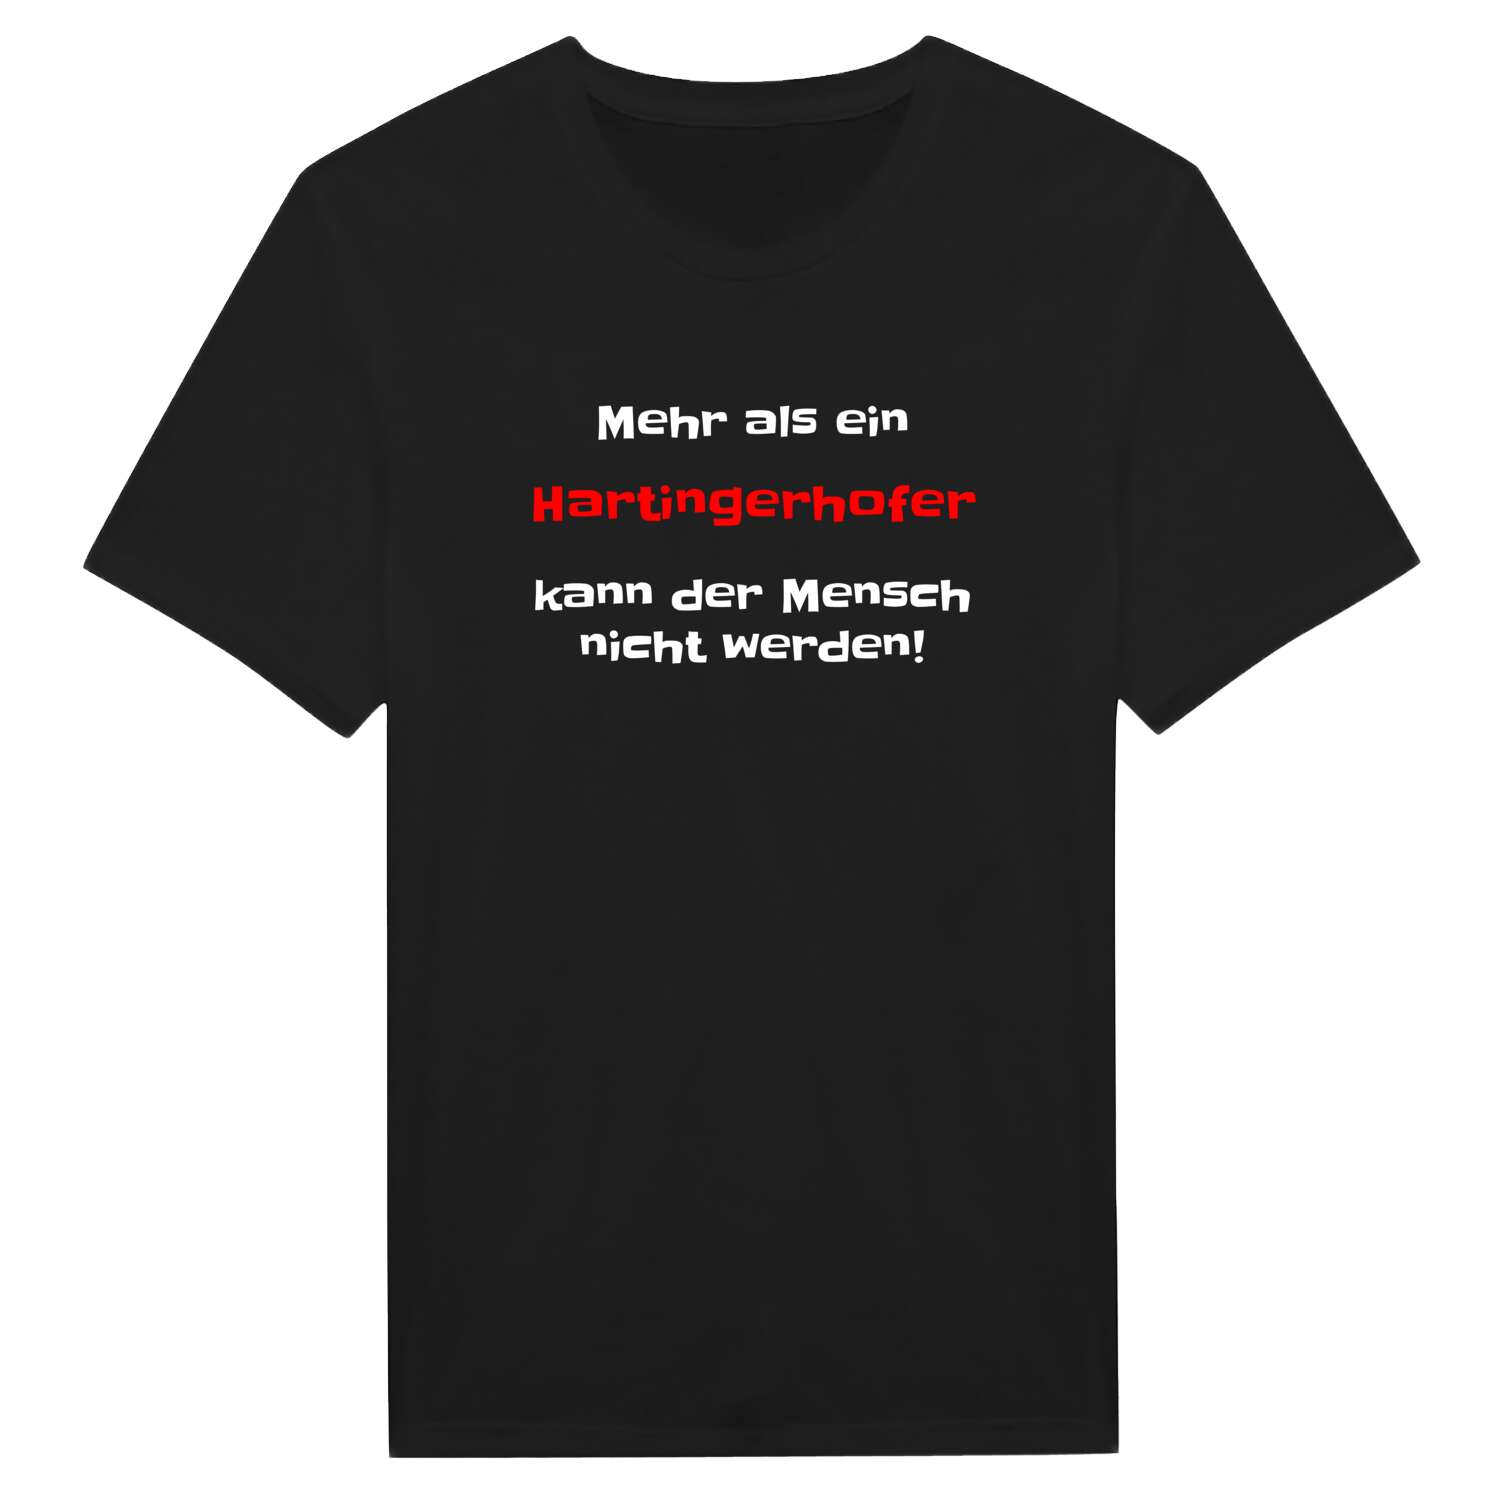 Hartingerhof T-Shirt »Mehr als ein«